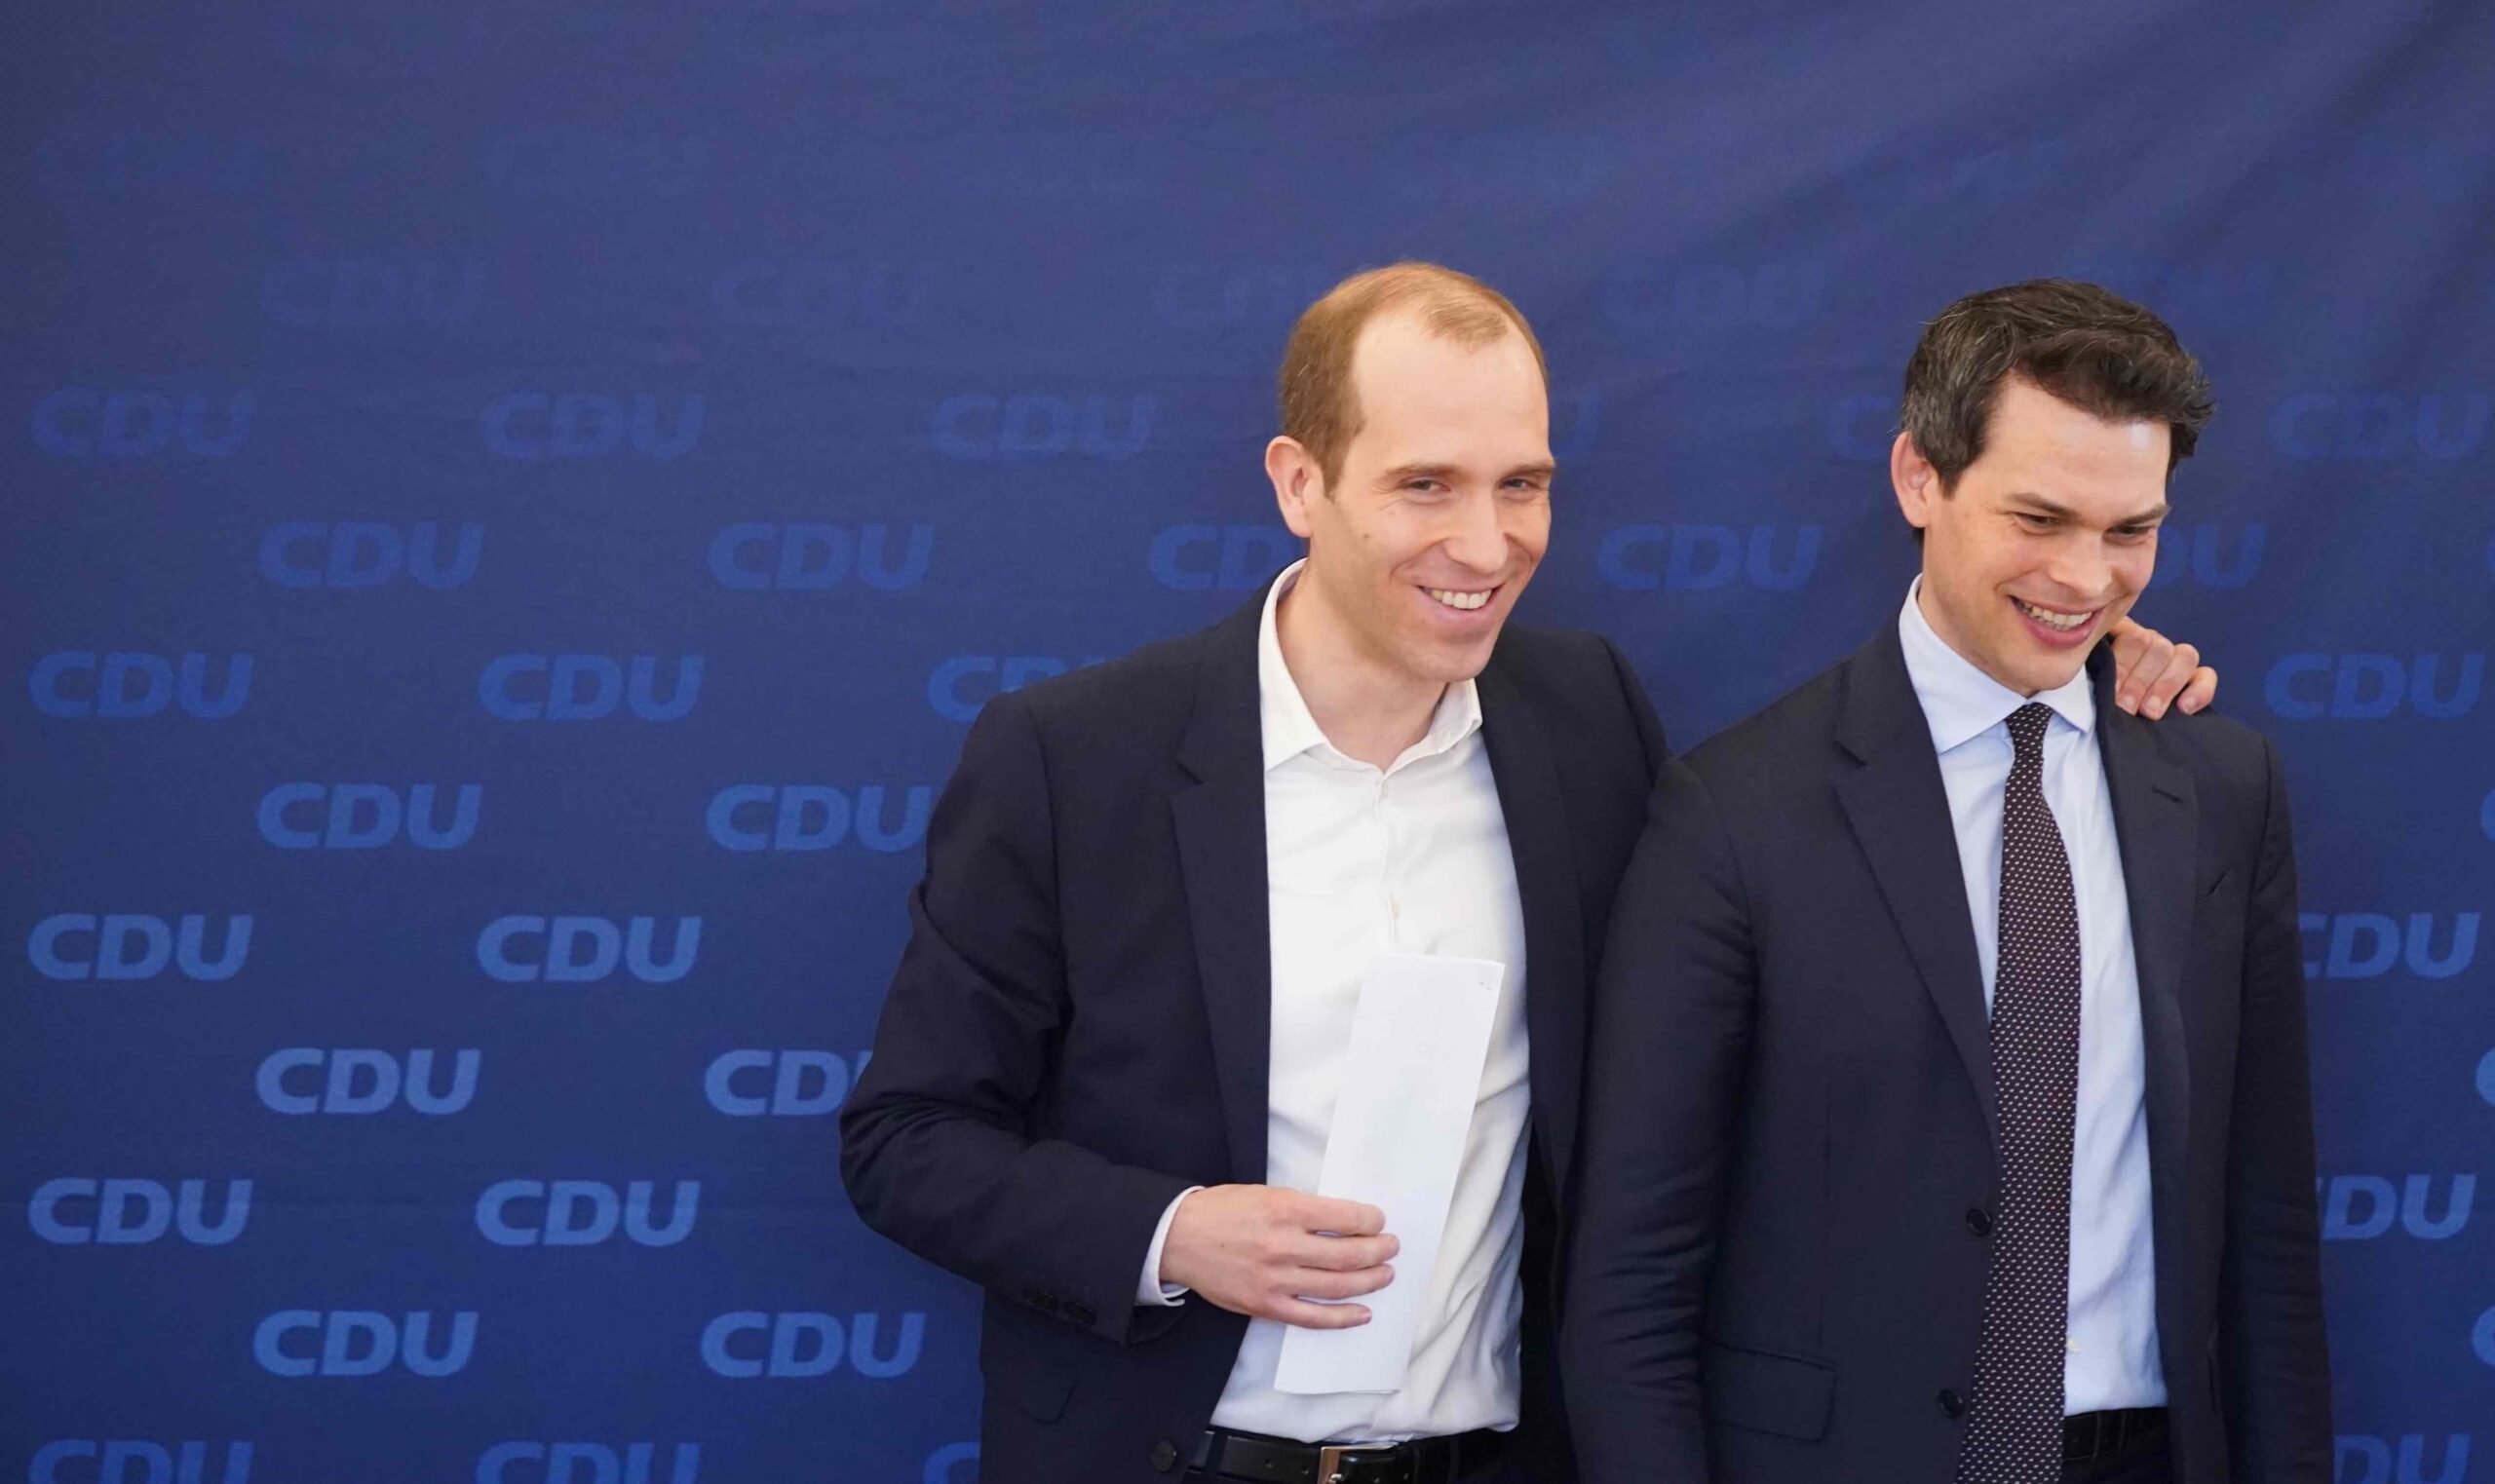 Dennis Thering (l), Fraktionsvorsitzender der CDU in der Hamburgischen Bürgerschaft, steht neben Christoph Ploß, Parteivorsitzender der CDU Hamburg, nach einer Pressekonferenz in der CDU-Landesgeschäftsstelle.